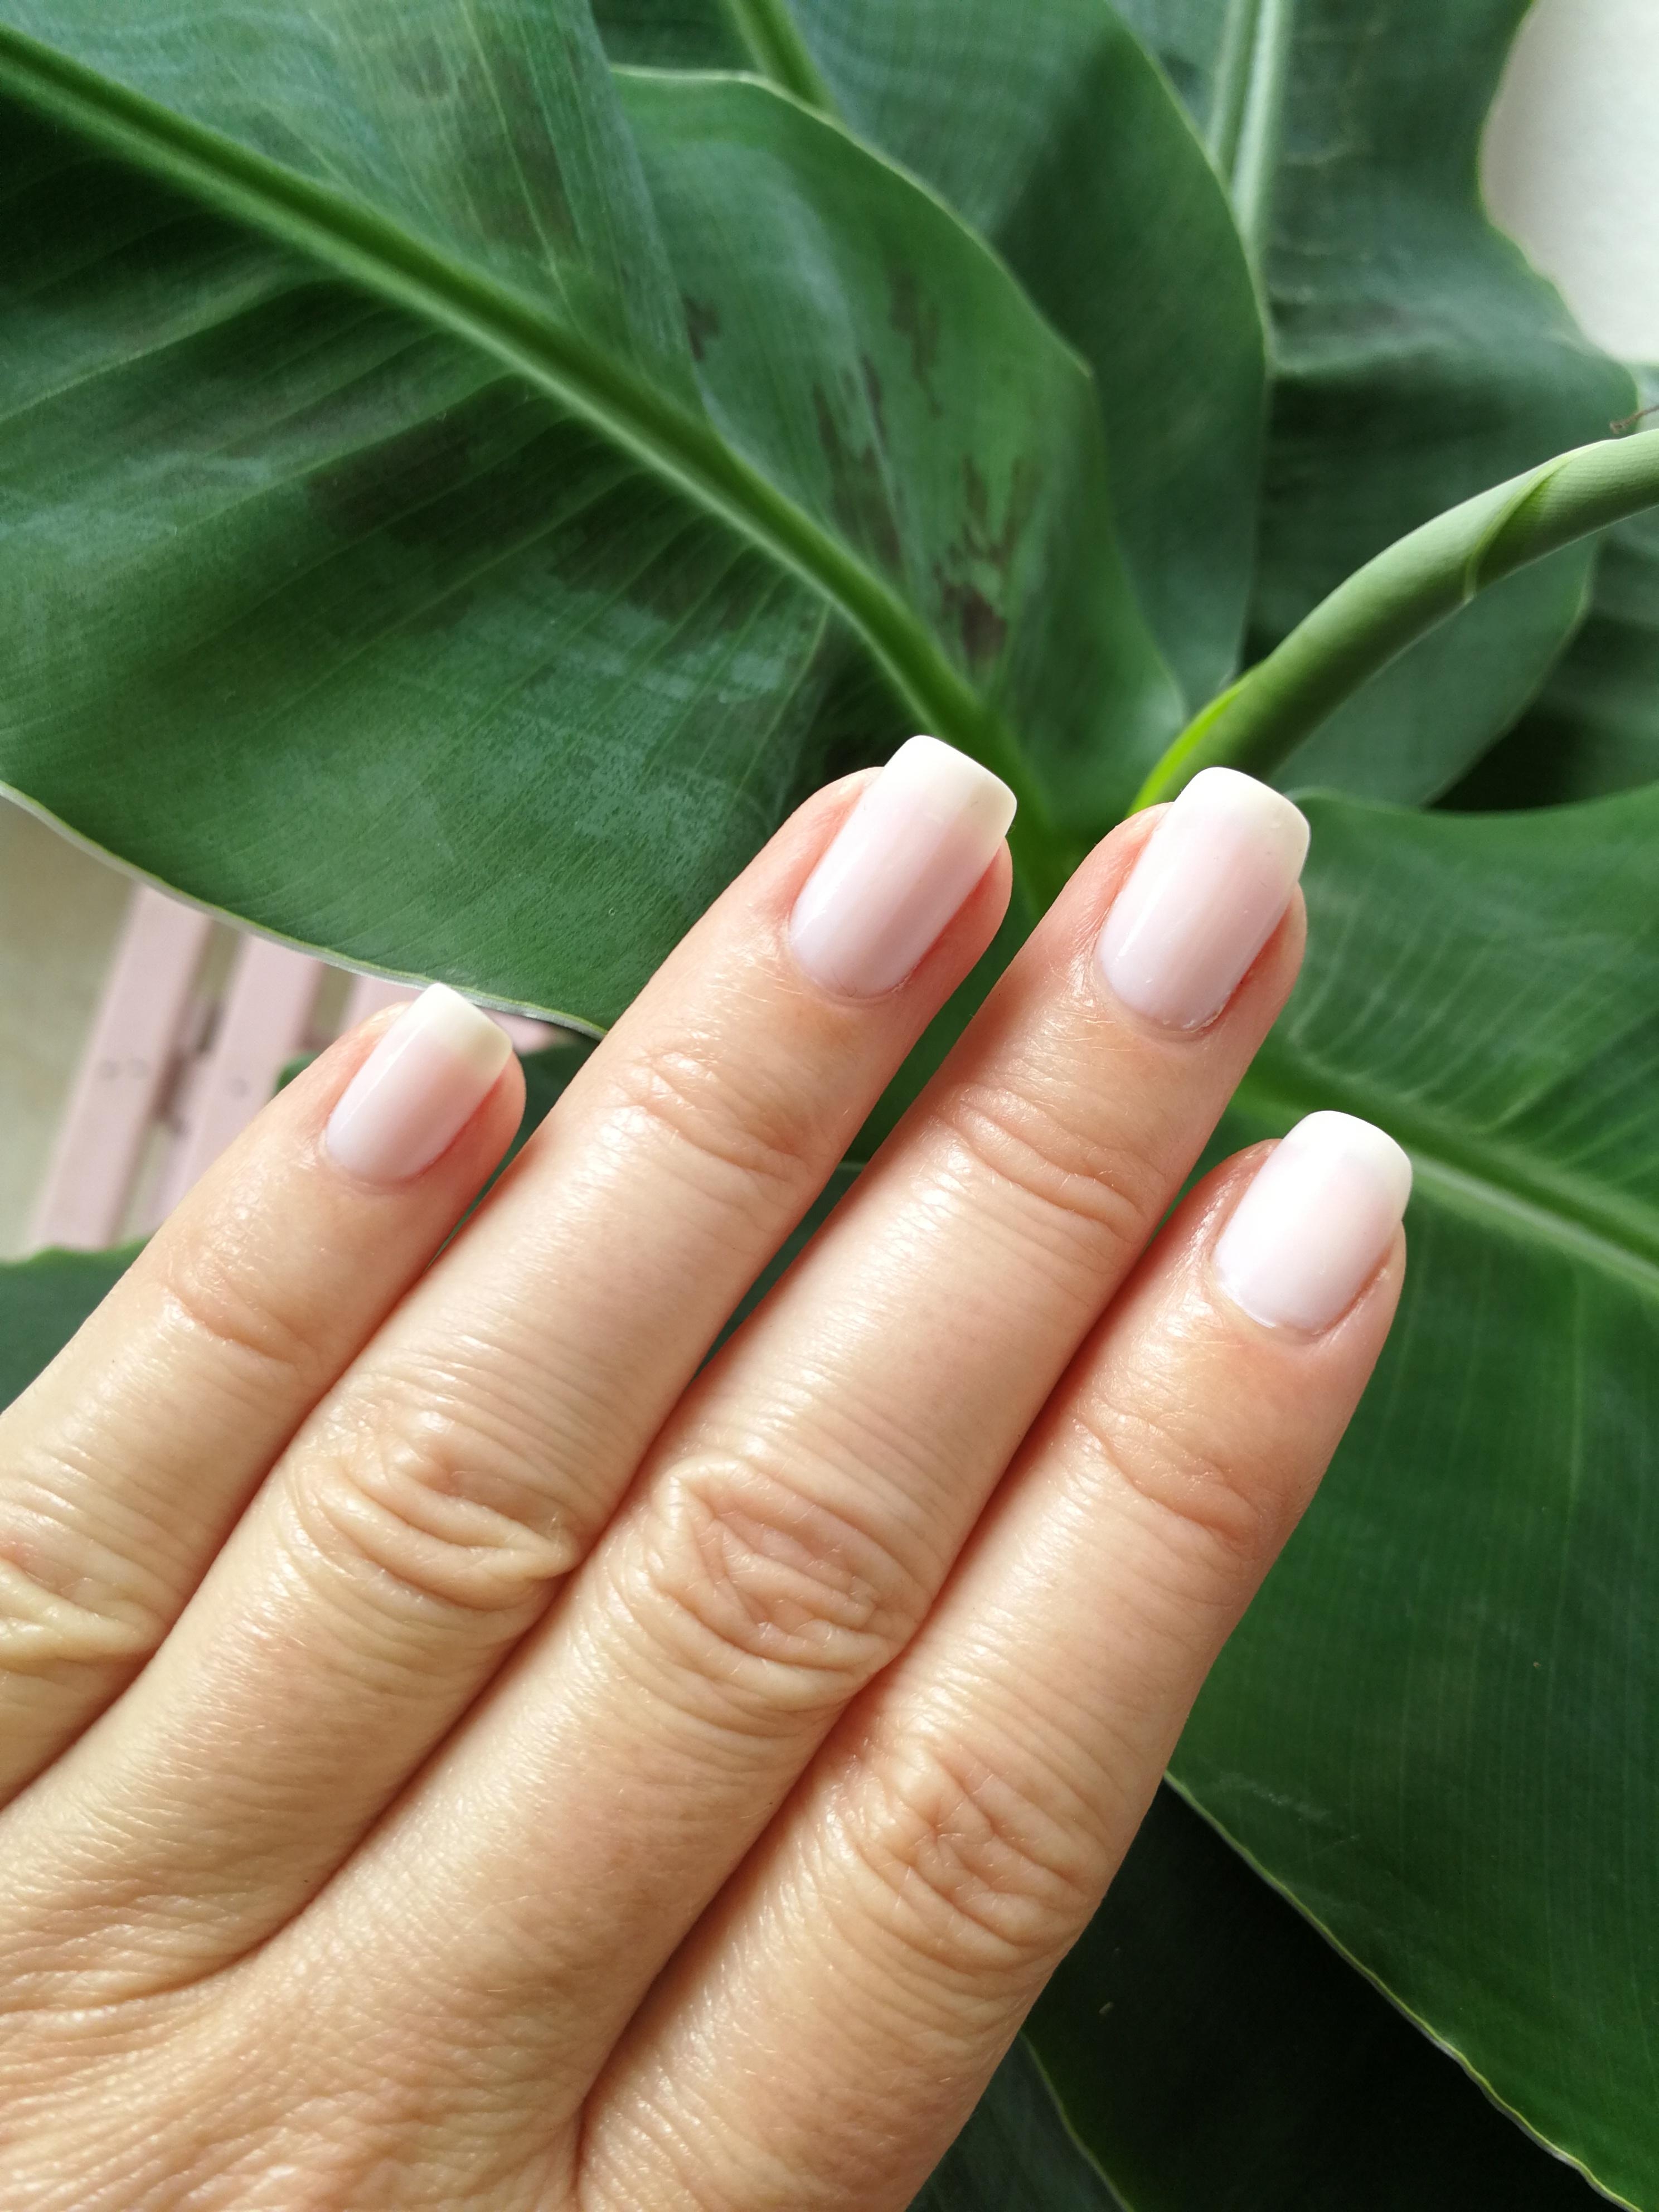 Der Klassiker 😊

#fashionbeautychallenge #nails 